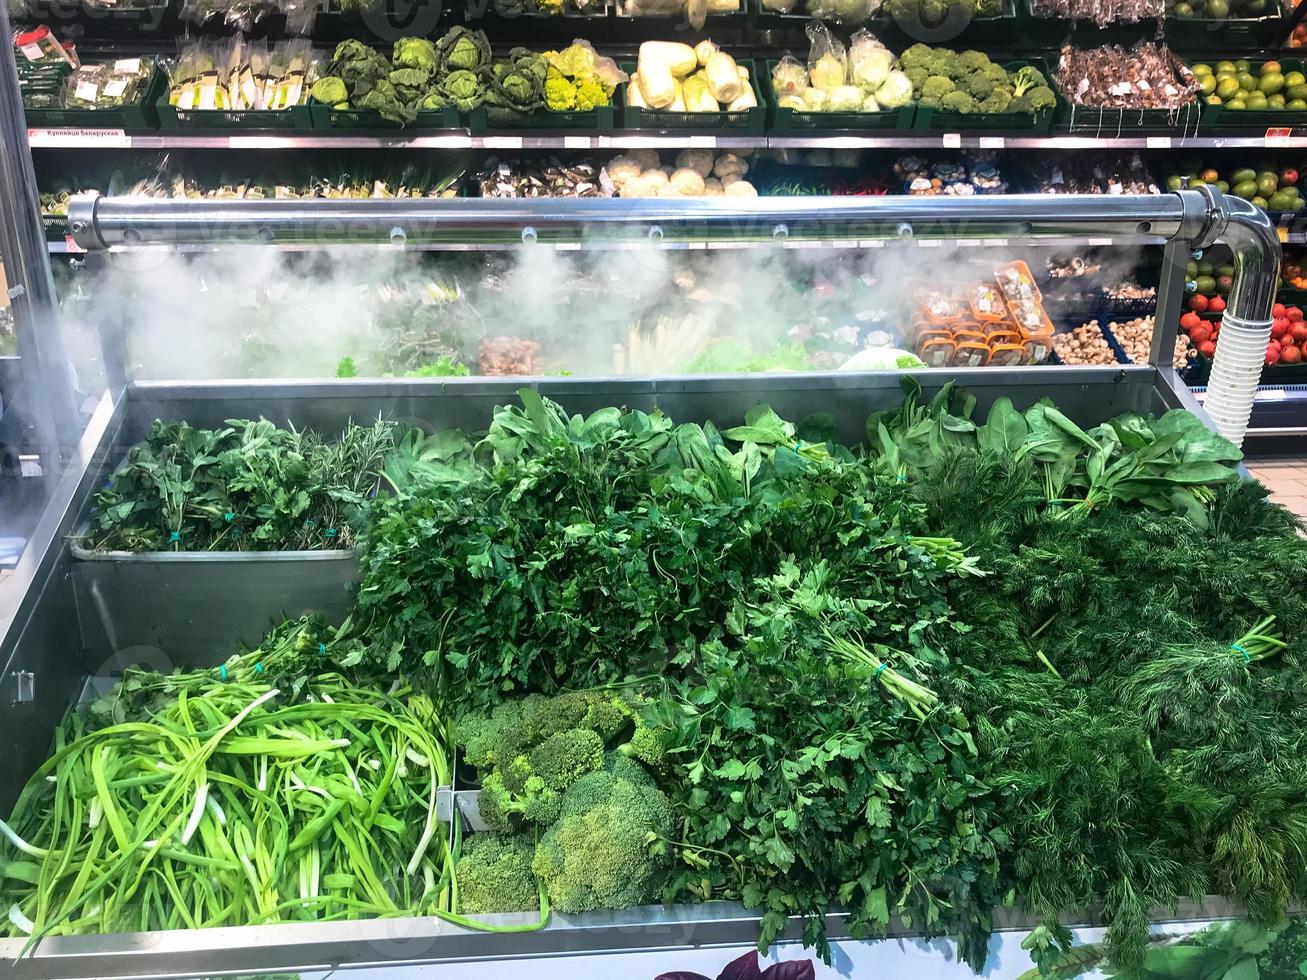 verdes frescos verdes verdes de salsa plantas salada de endro rúcula cebolas e outros alimentos vegetais encontra-se em uma geladeira moderna em uma loja de supermercado no balcão. o fundo foto